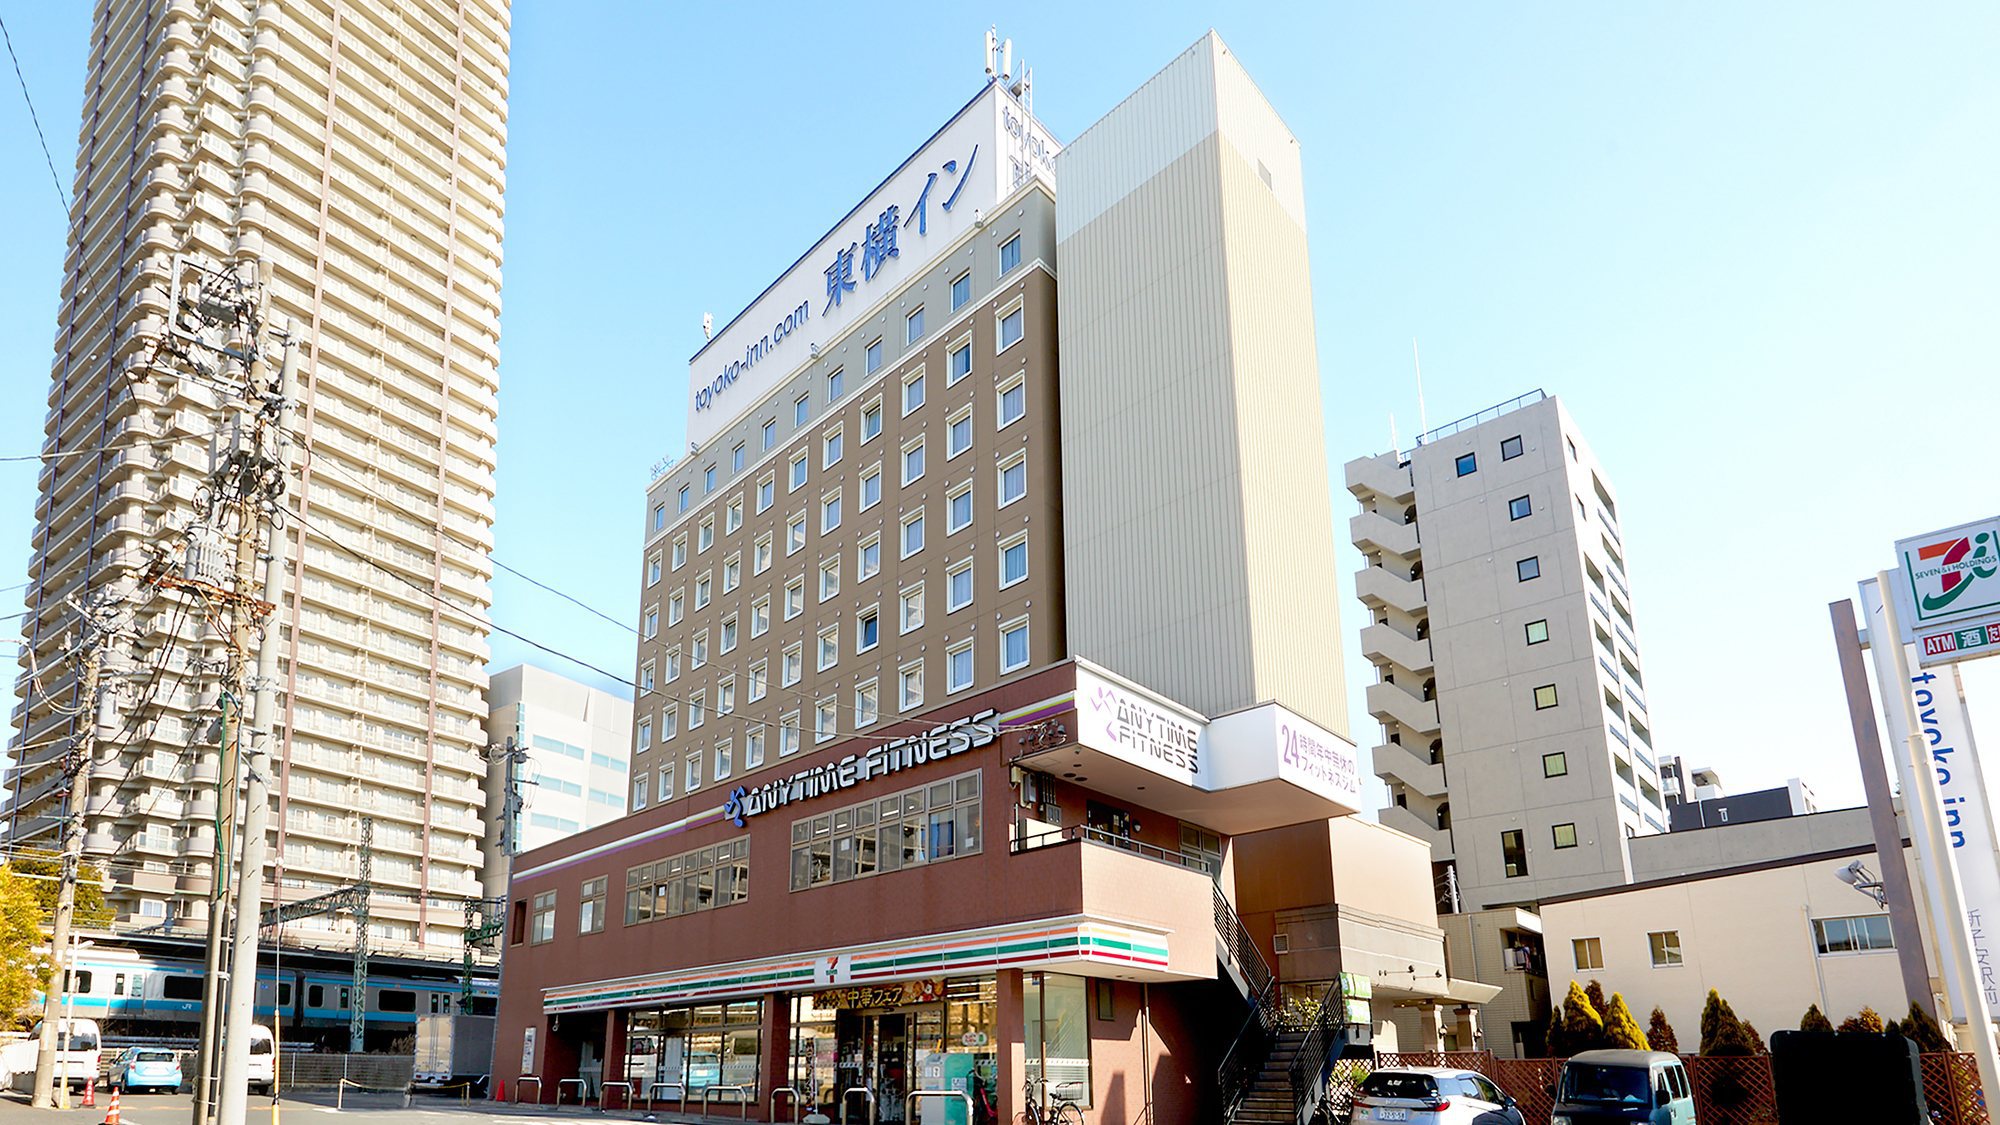 子安駅周辺のホテル 旅館の格安予約サイト Biglobe旅行